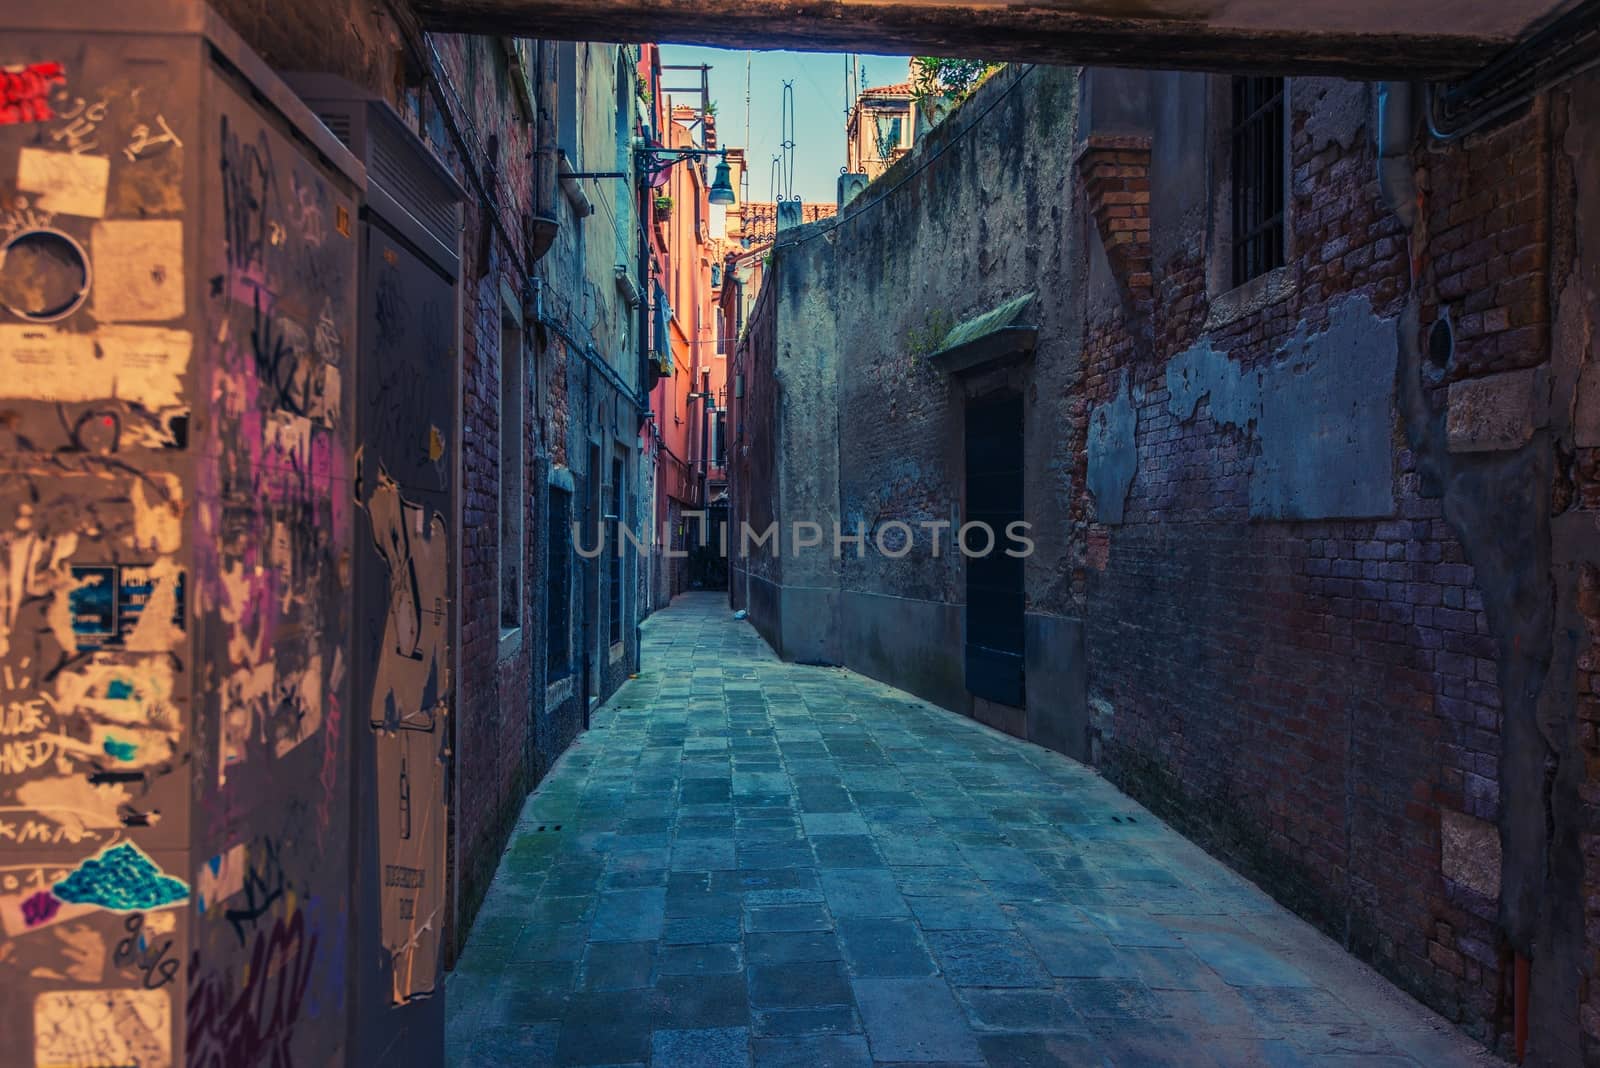 Venice Italy Street. Venetian Architecture. Narrow Venice Street.